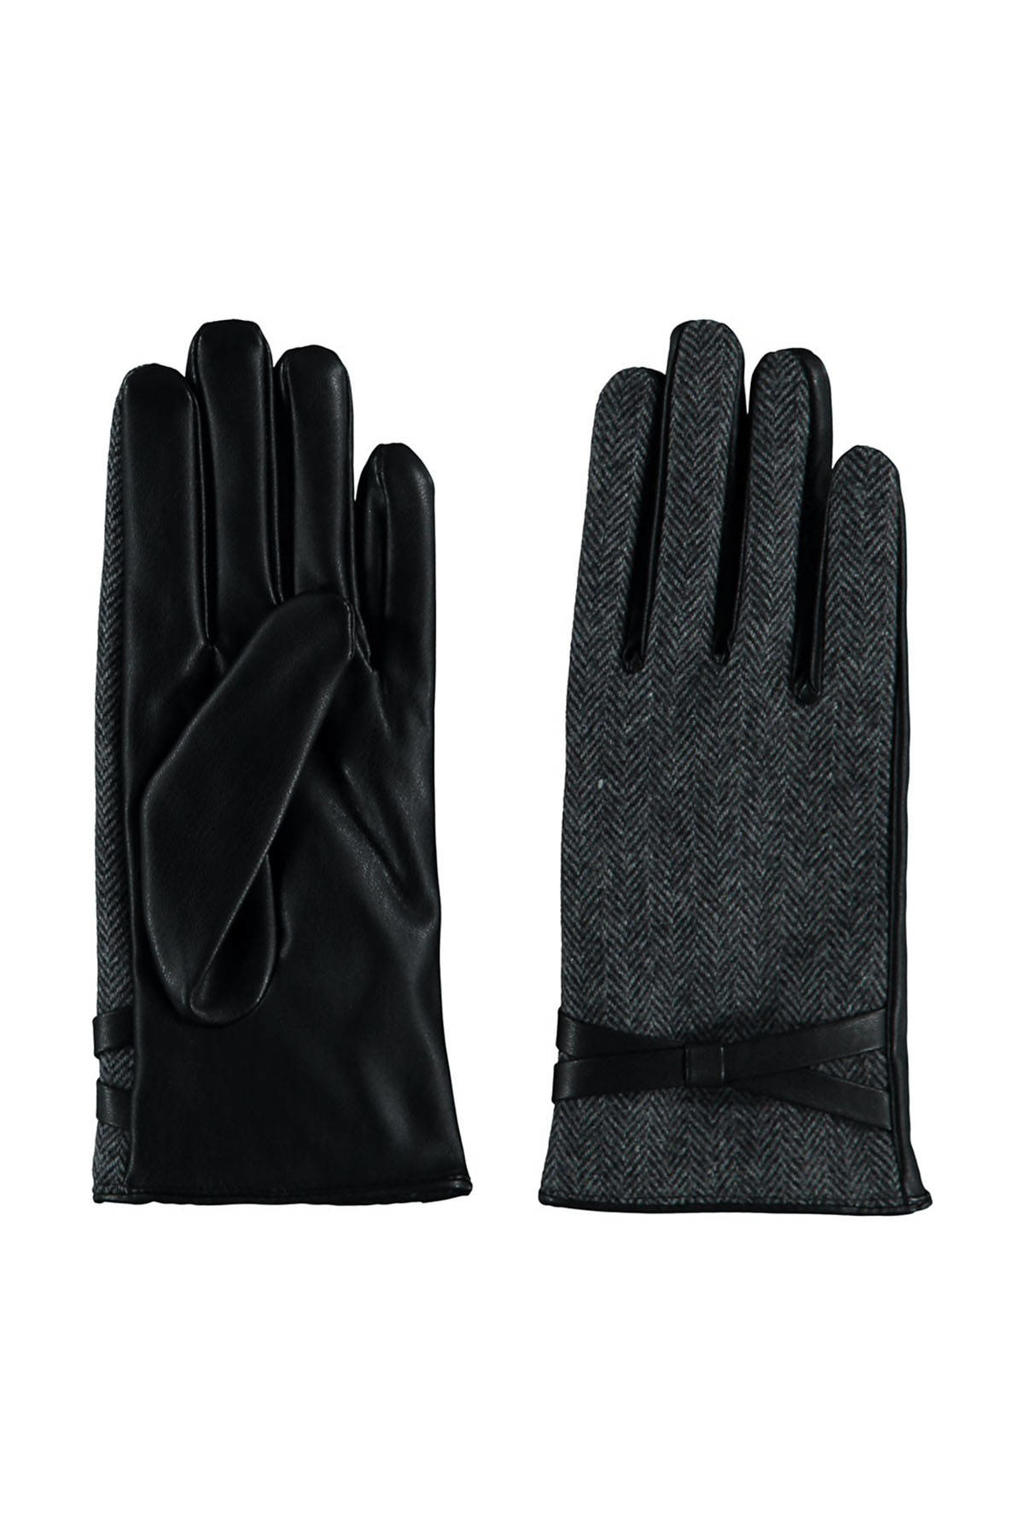 Sarlini handschoenen met visgraat motief grijs/zwart